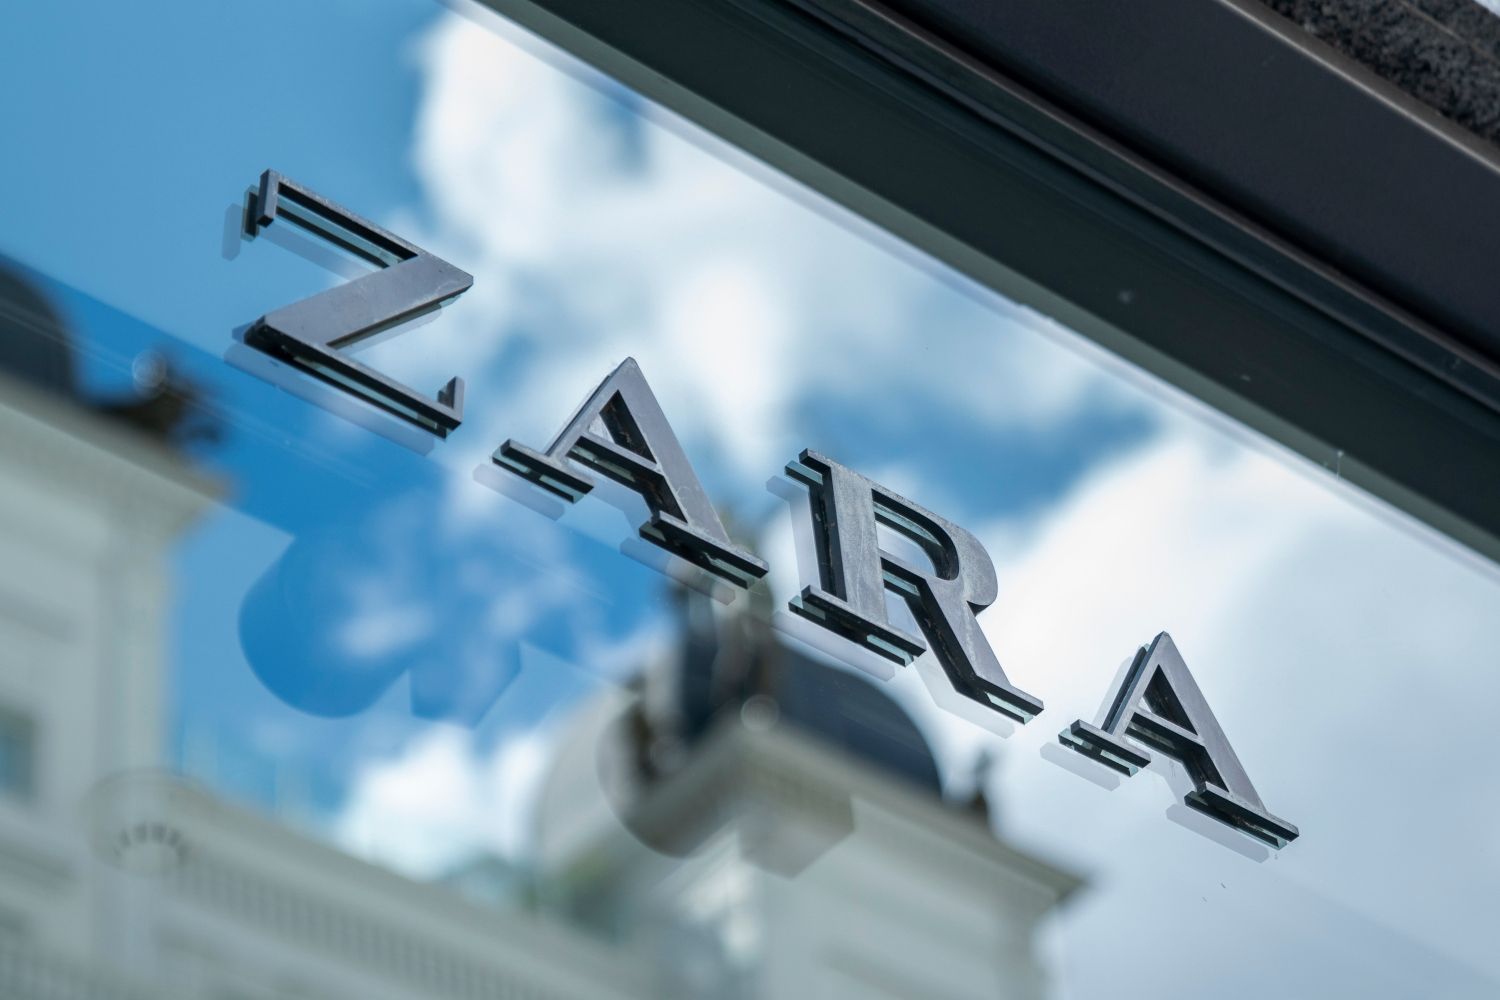 Que dia da semana é o melhor para comprar na Zara?